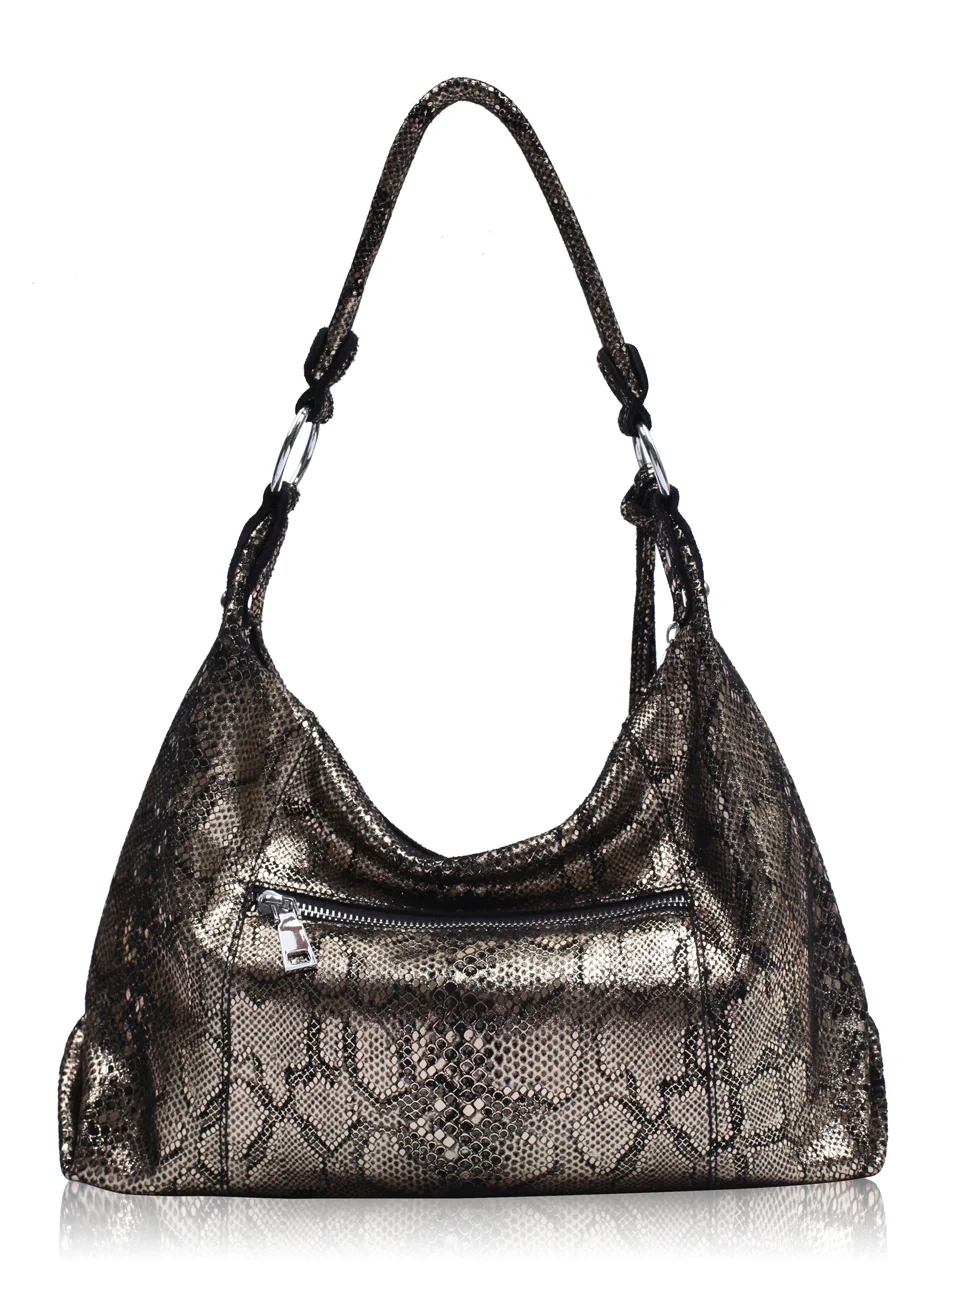 ZROM брендовая сумка из натуральной кожи, женская модная сумка со змеиным принтом, кожаные сумки, женские большие сумки на плечо, вместительная сумка